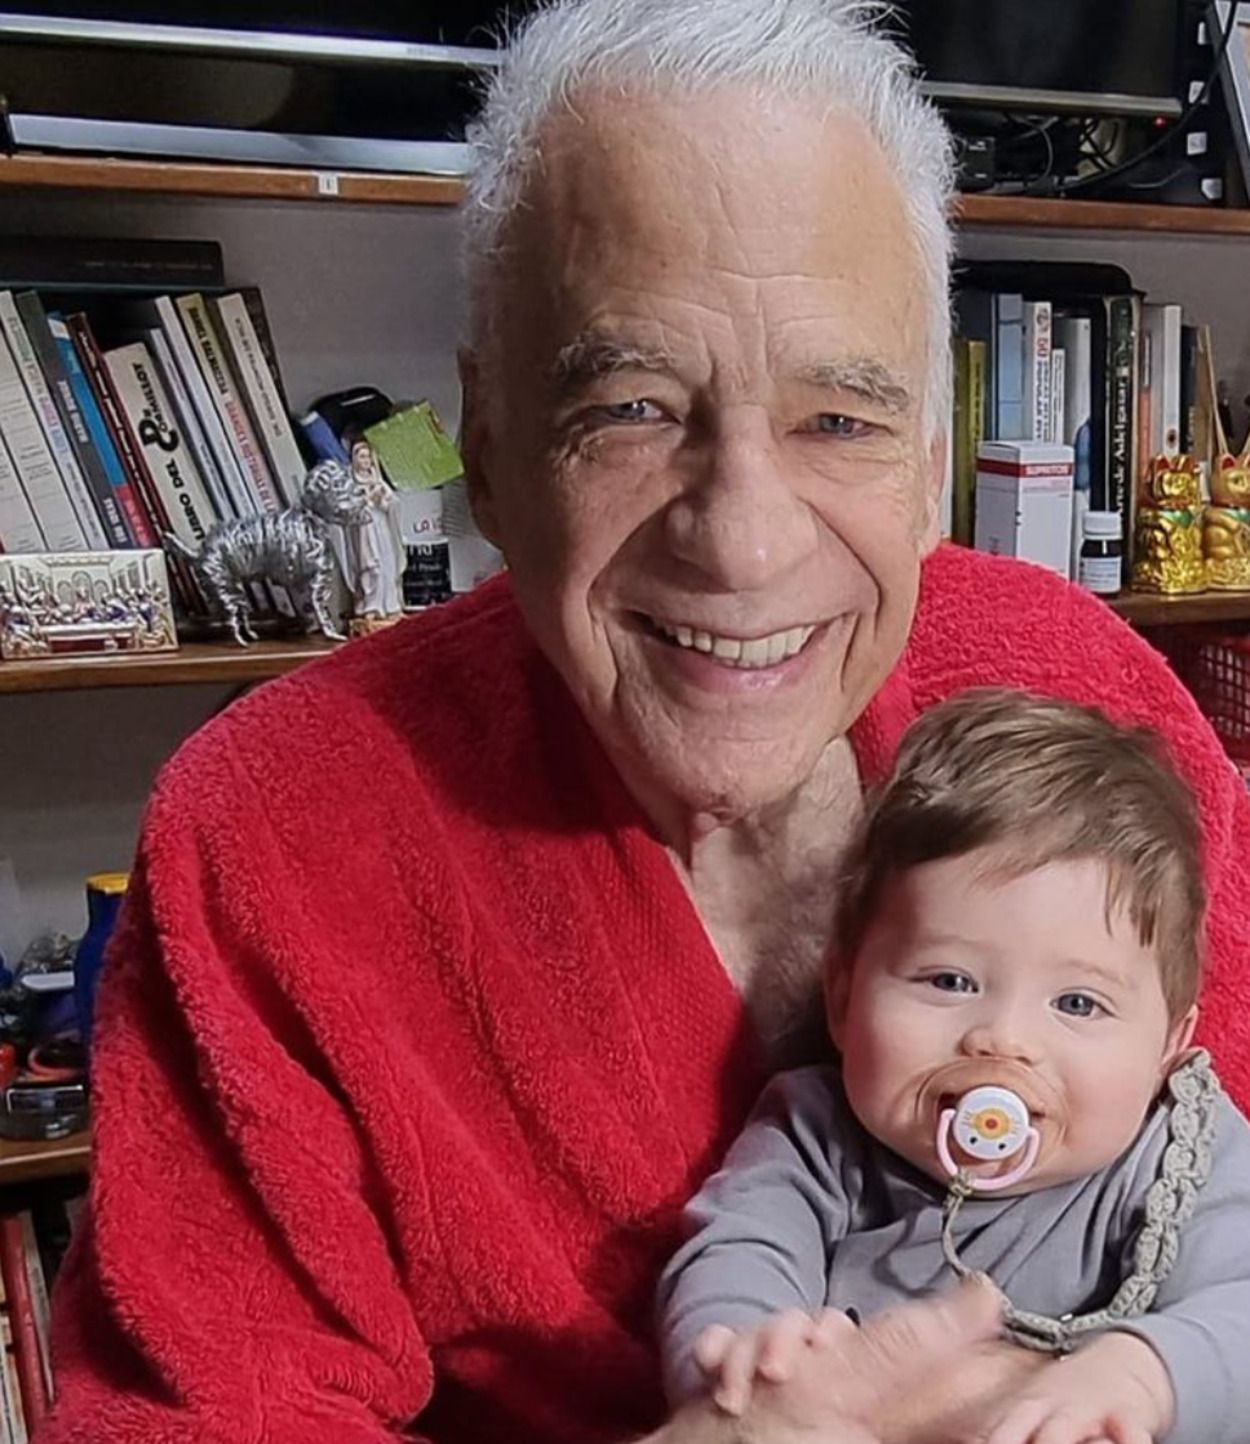 La preocupación de un hombre que acaba de ser padre a los 83 años: "No podré verlo crecer"